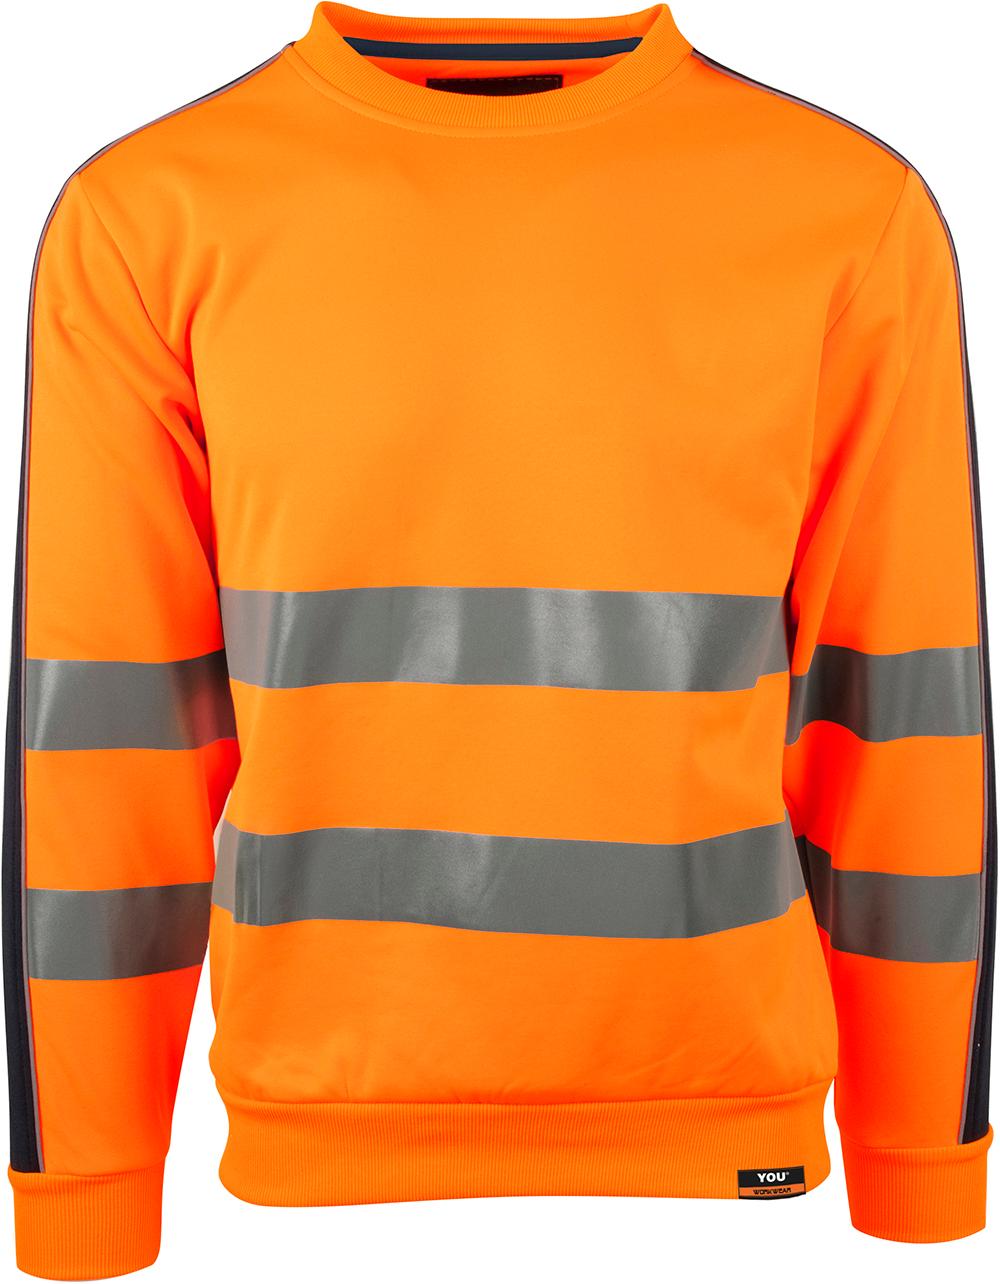 4696 Stockholm Safety Orange